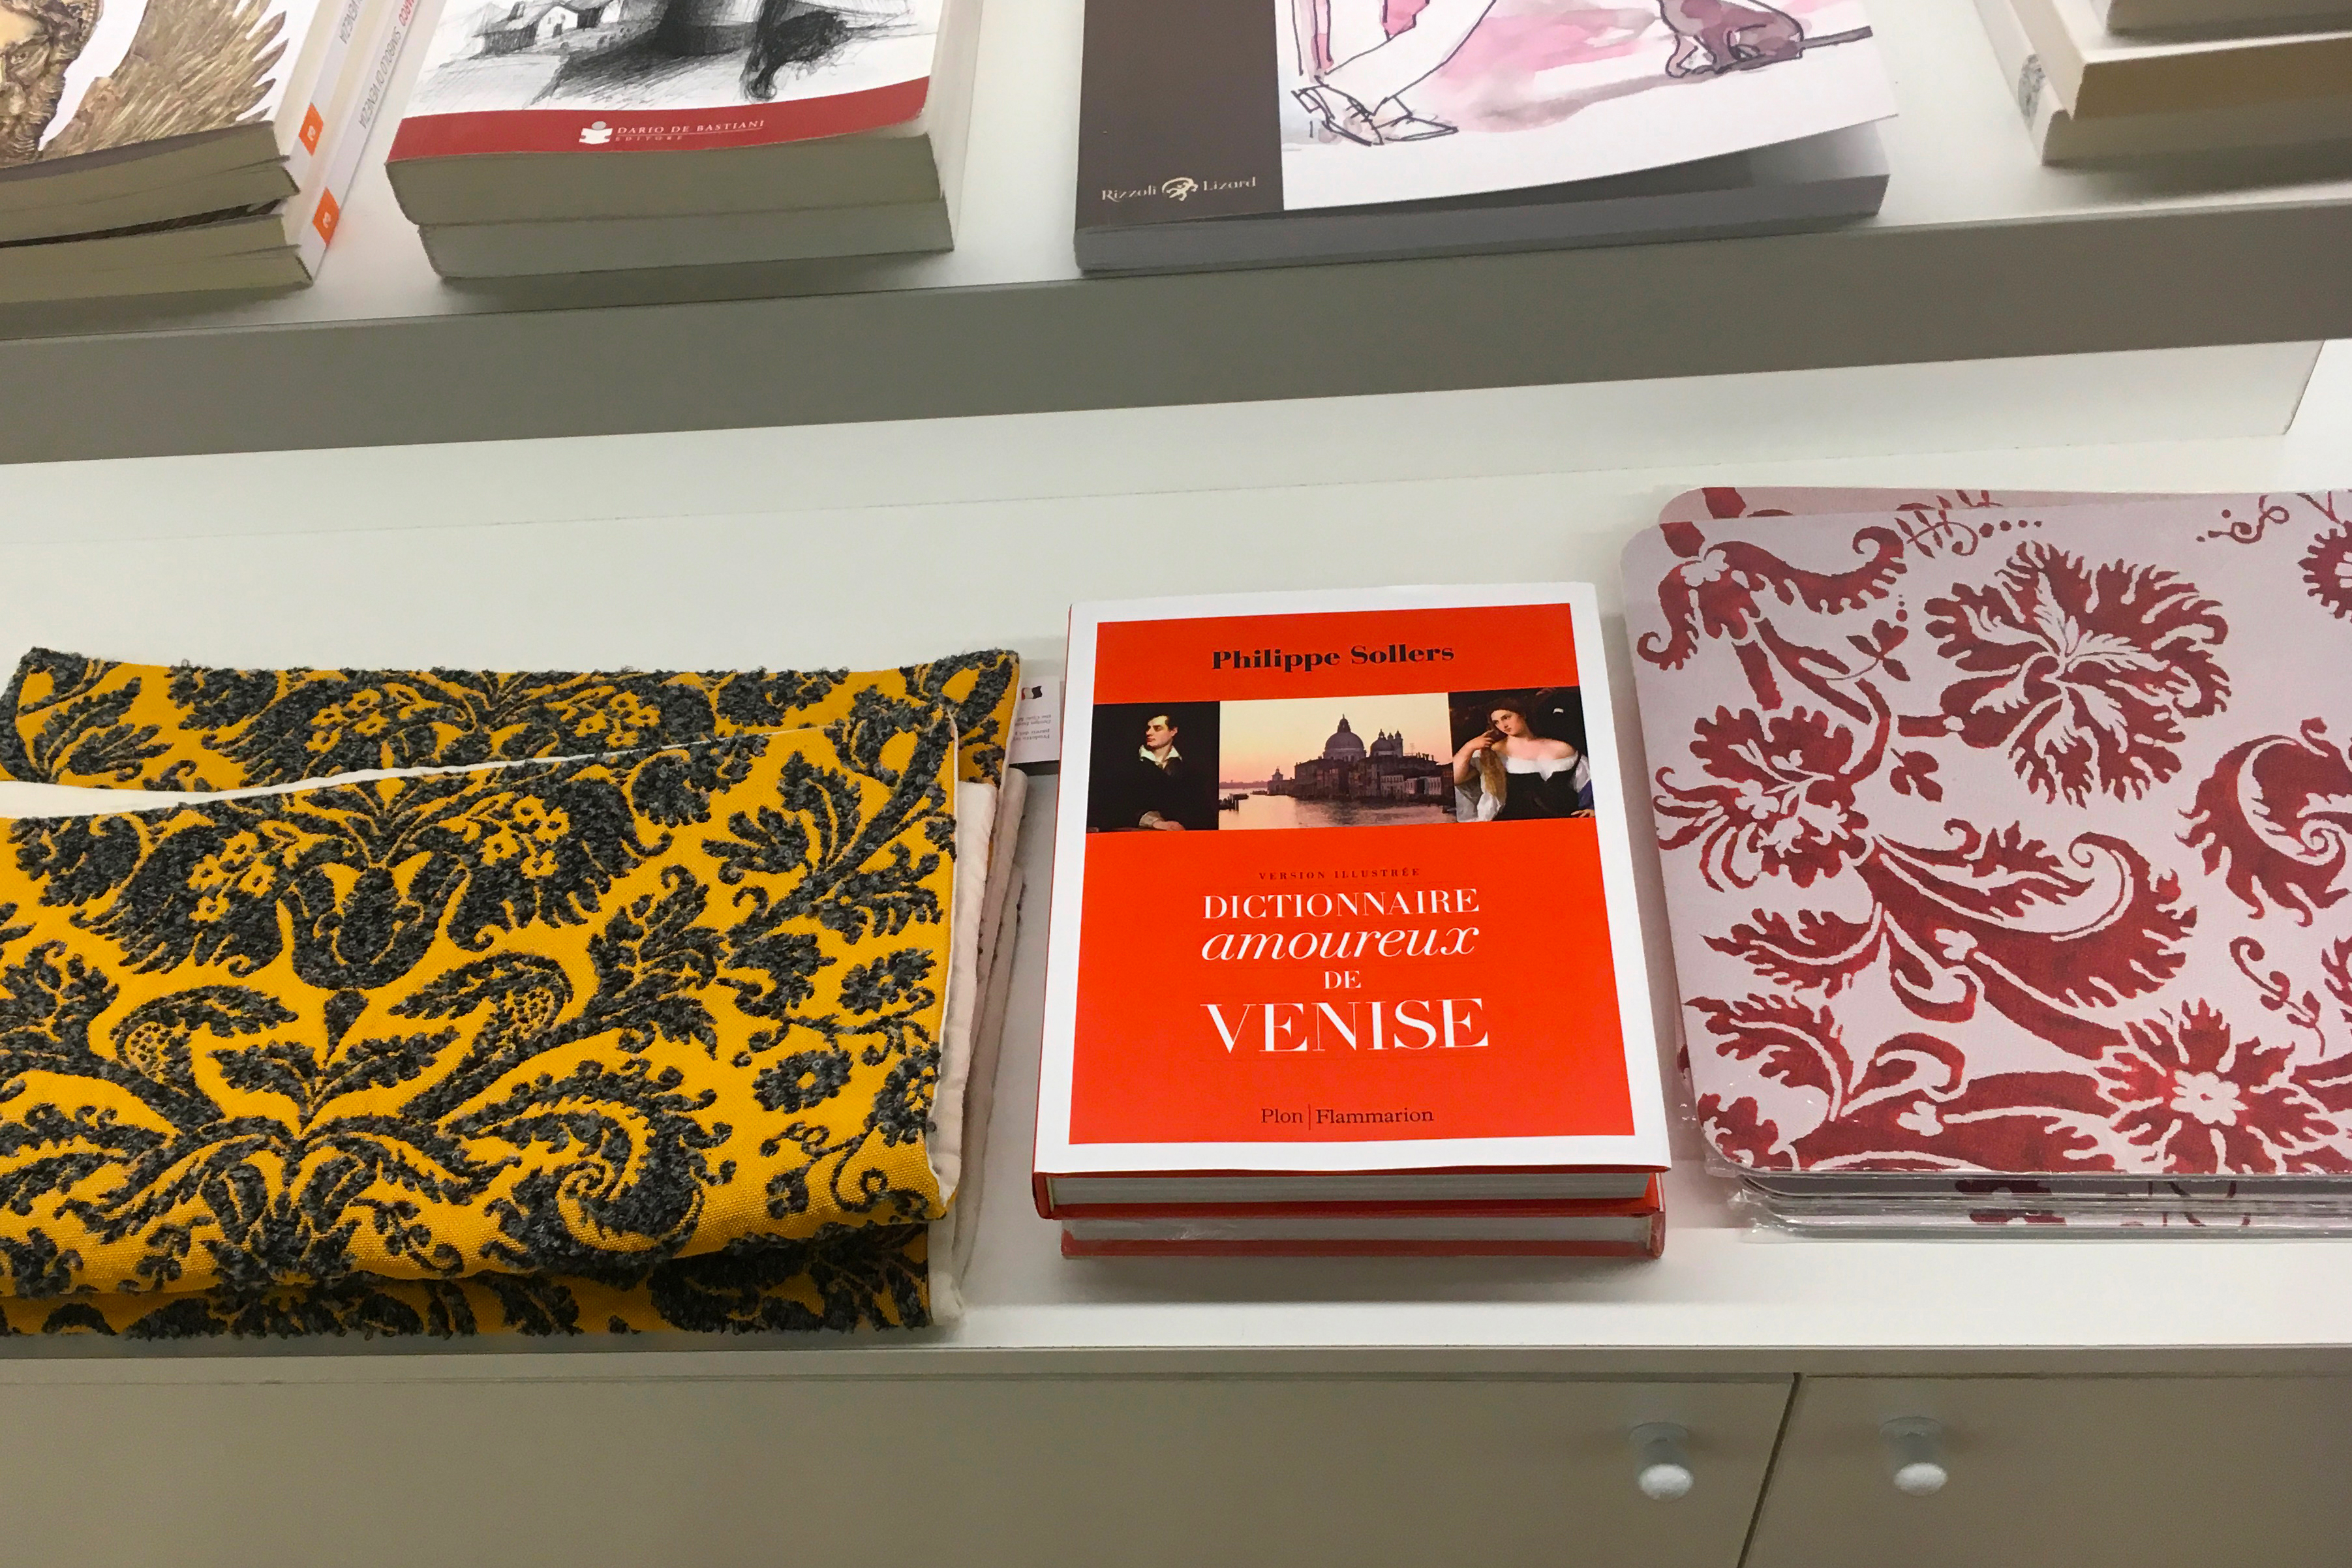 Le Dictionnaire amoureux de Venise de Philippe Sollers au Palais des Doges

novembre 2018, photo : Sophie Zhang